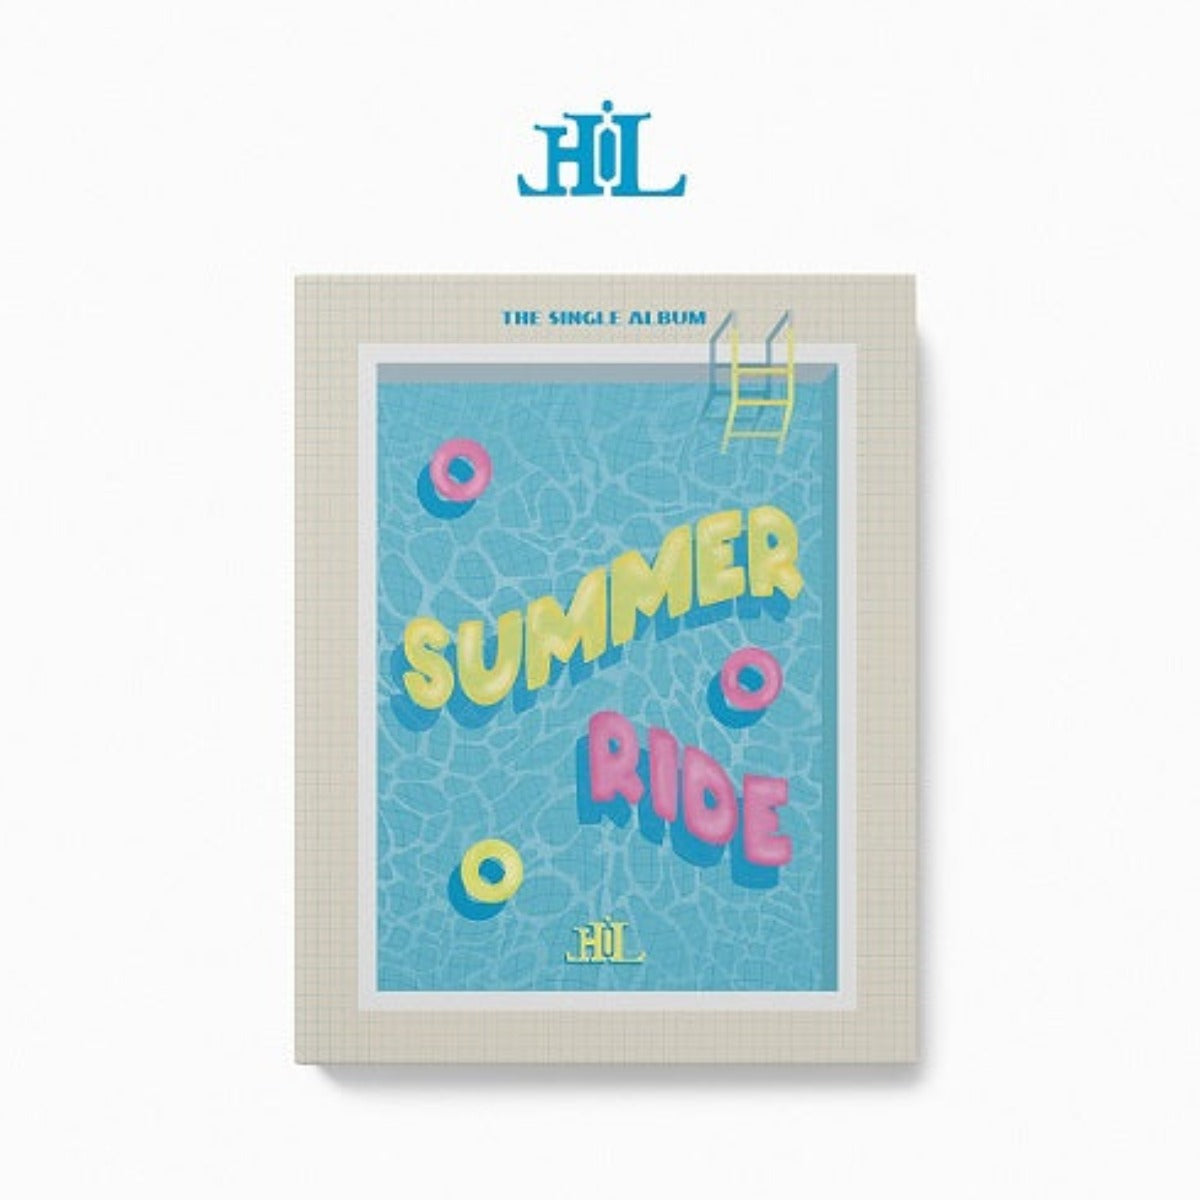 Hi-L Single Album - Summer Ride